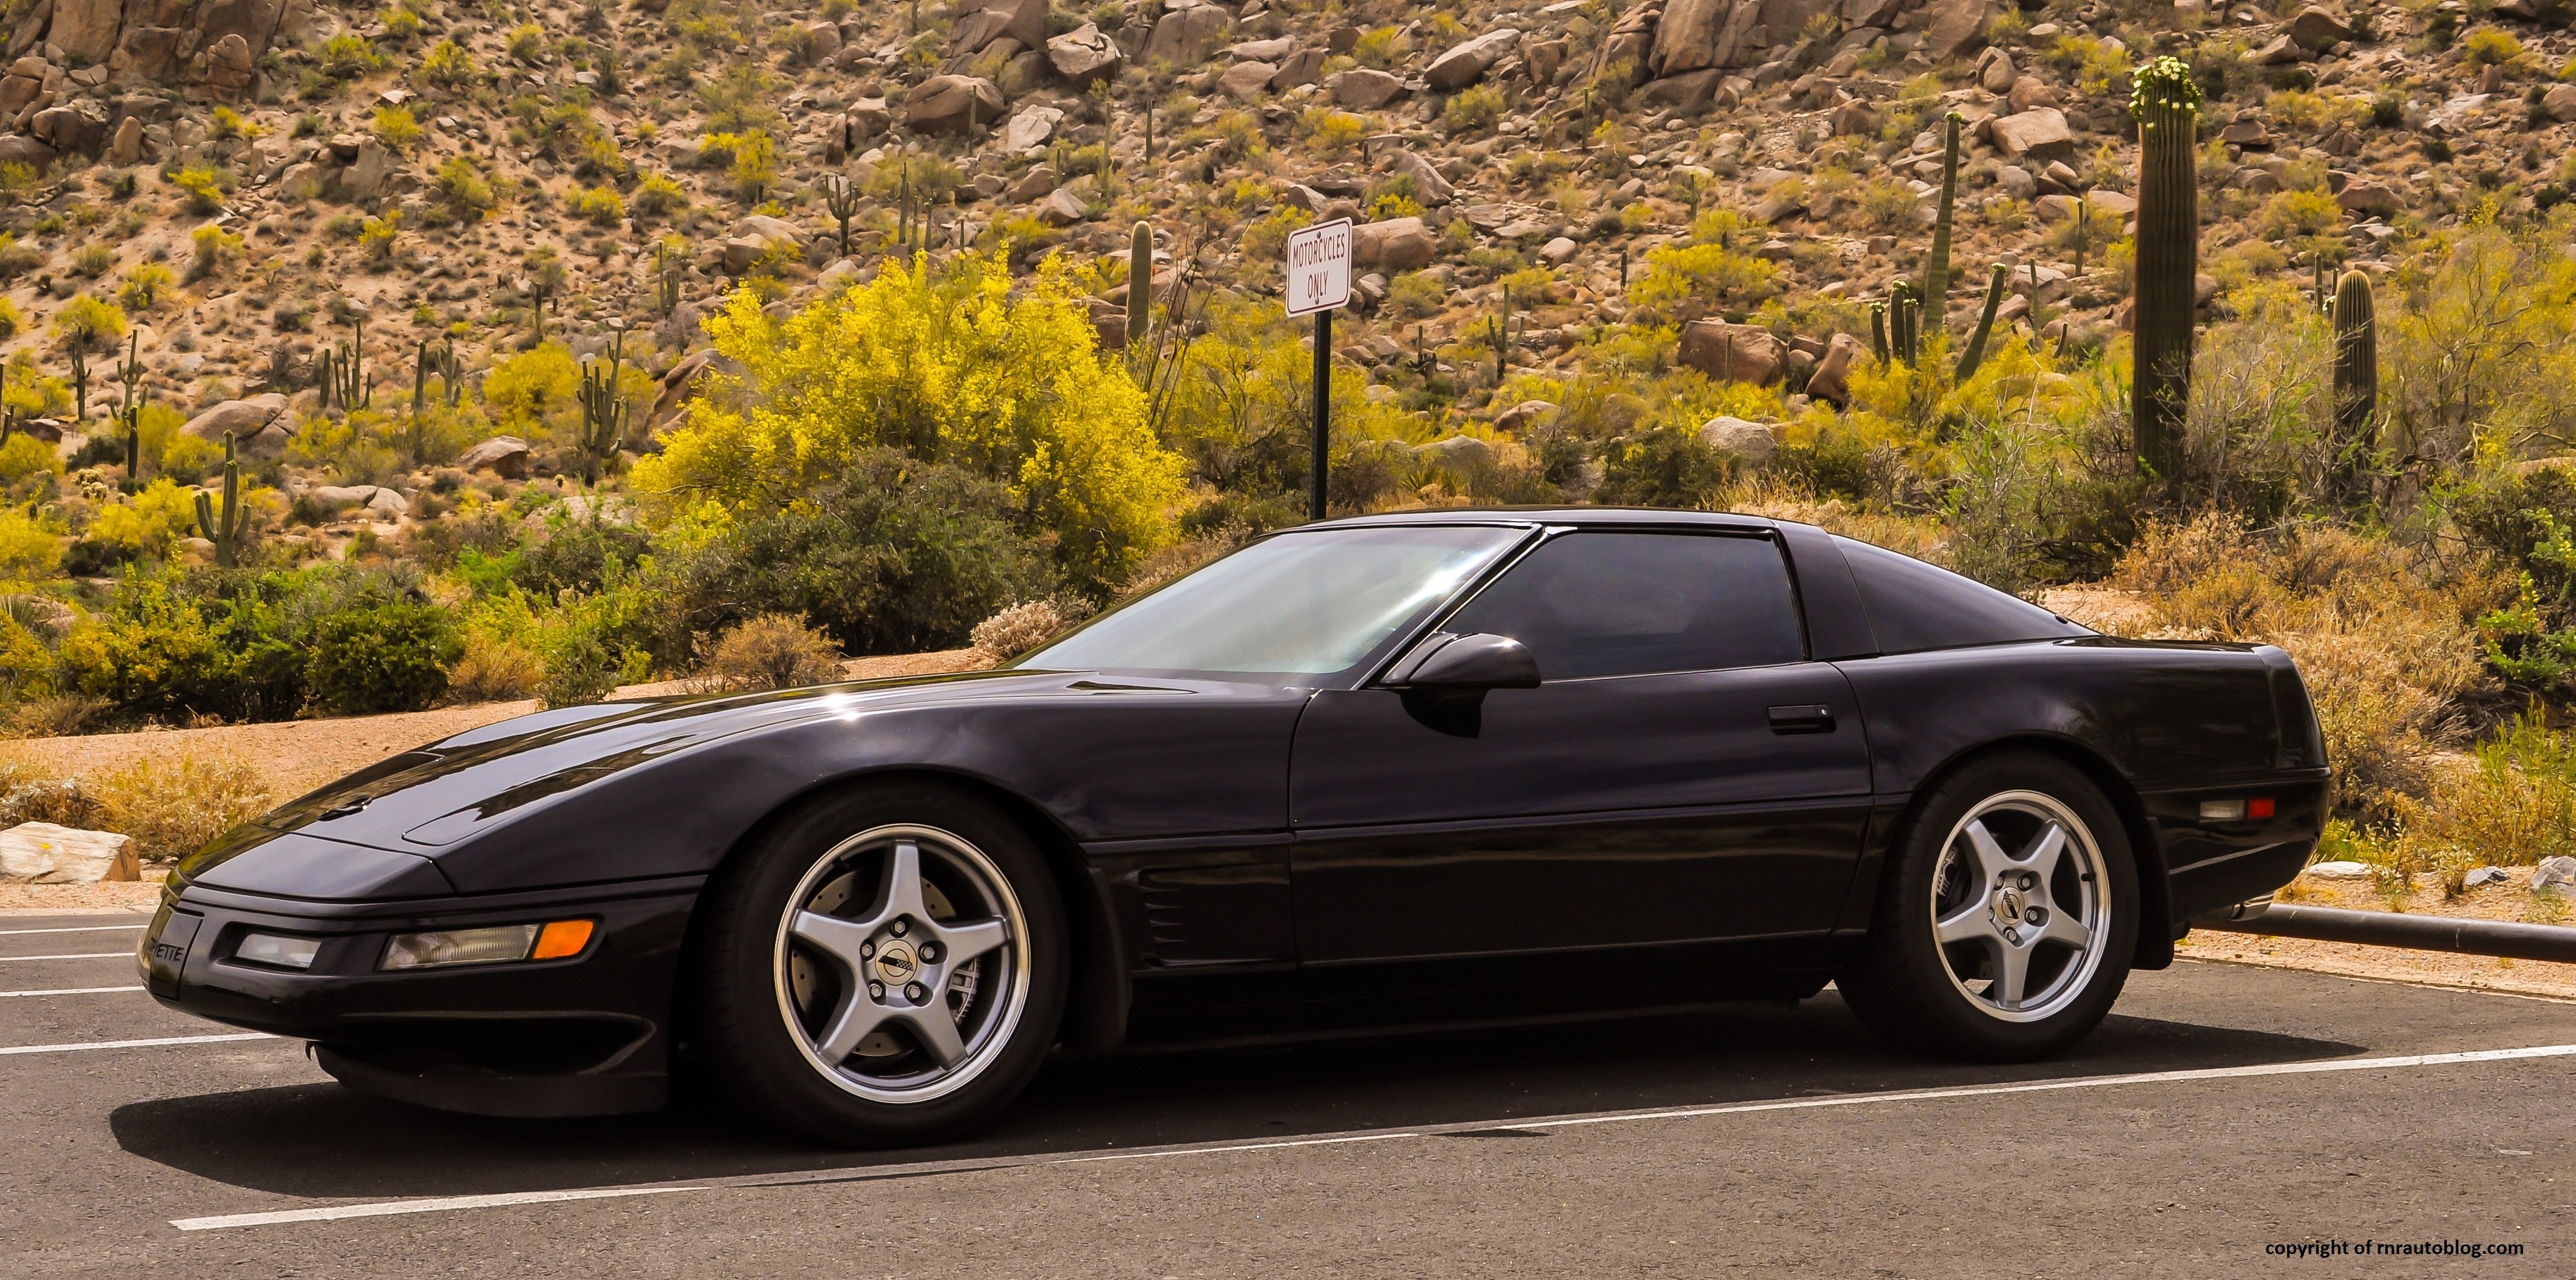 1996 Corvette LT4 in Black